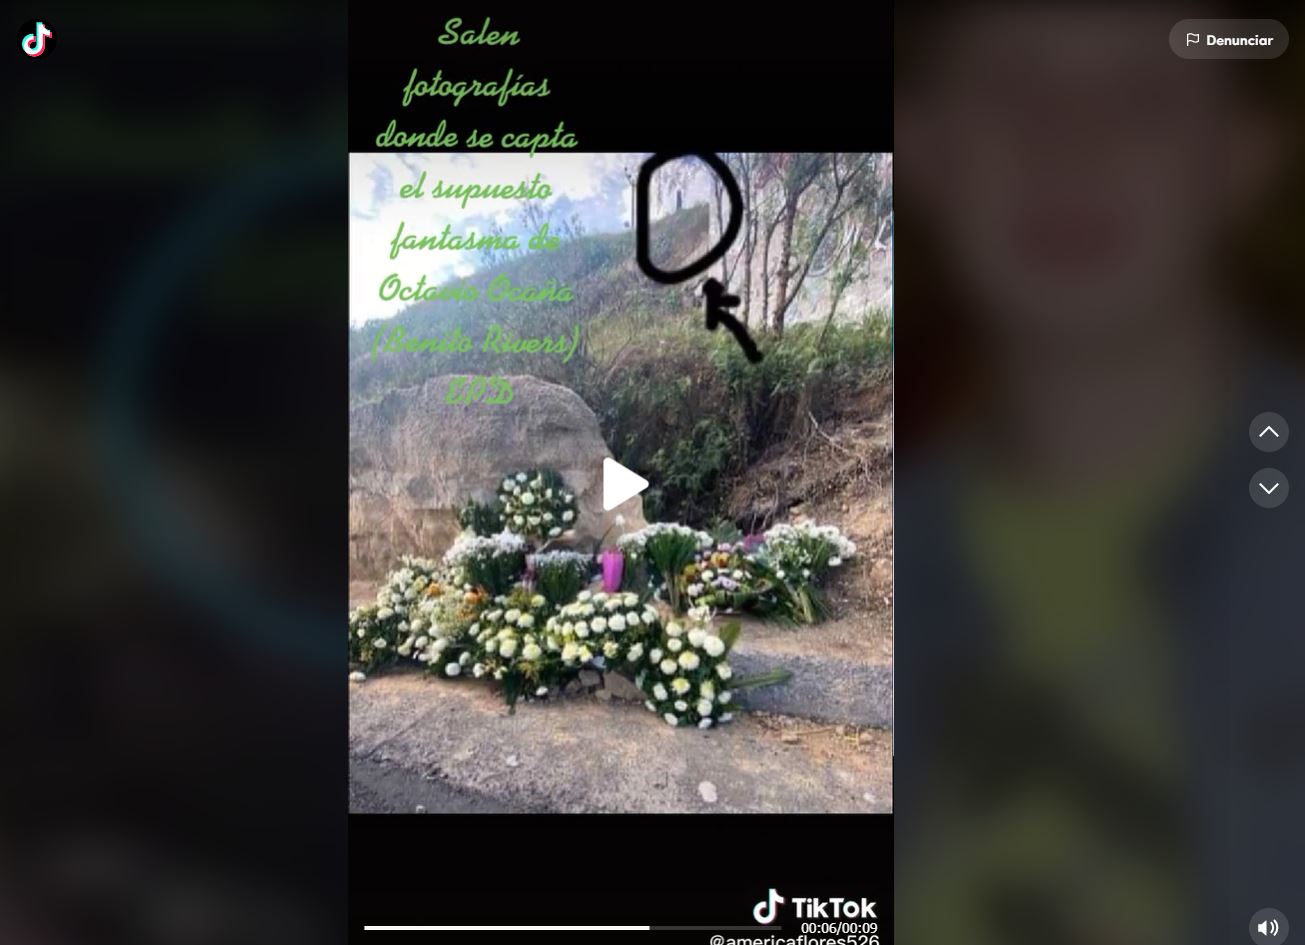 Videos en redes sociales afirman que en el lugar de la muerte de Octavio Ocaña aparece su fantasma. (Foto Prensa Libre: Captura de Pantalla)